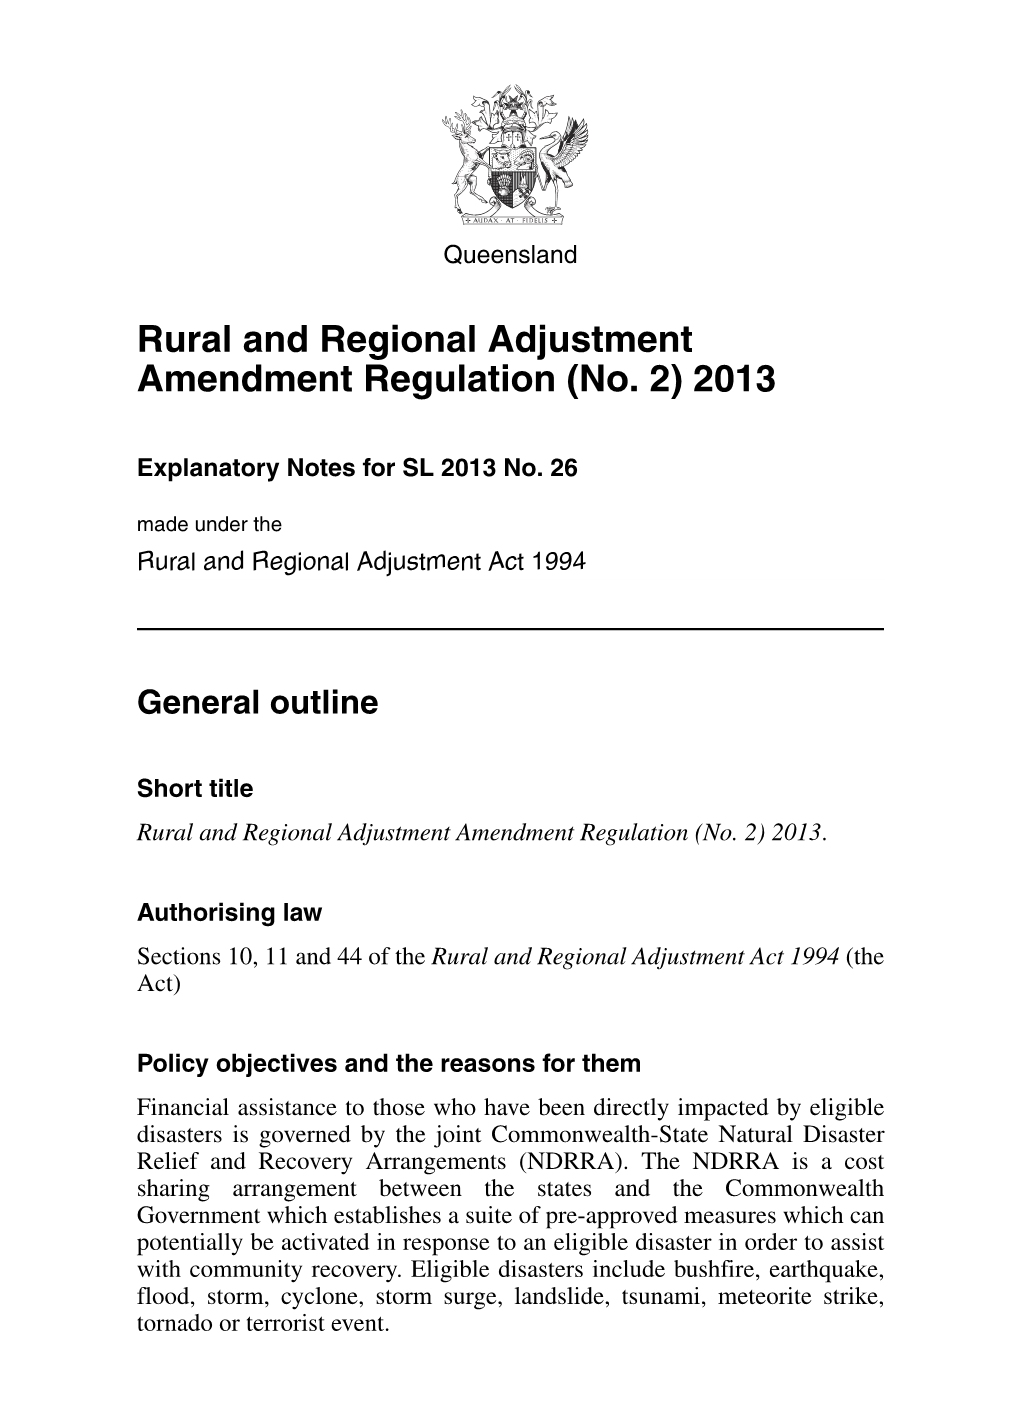 Rural and Regional Adjustment Amendment Regulation (No. 2) 2013